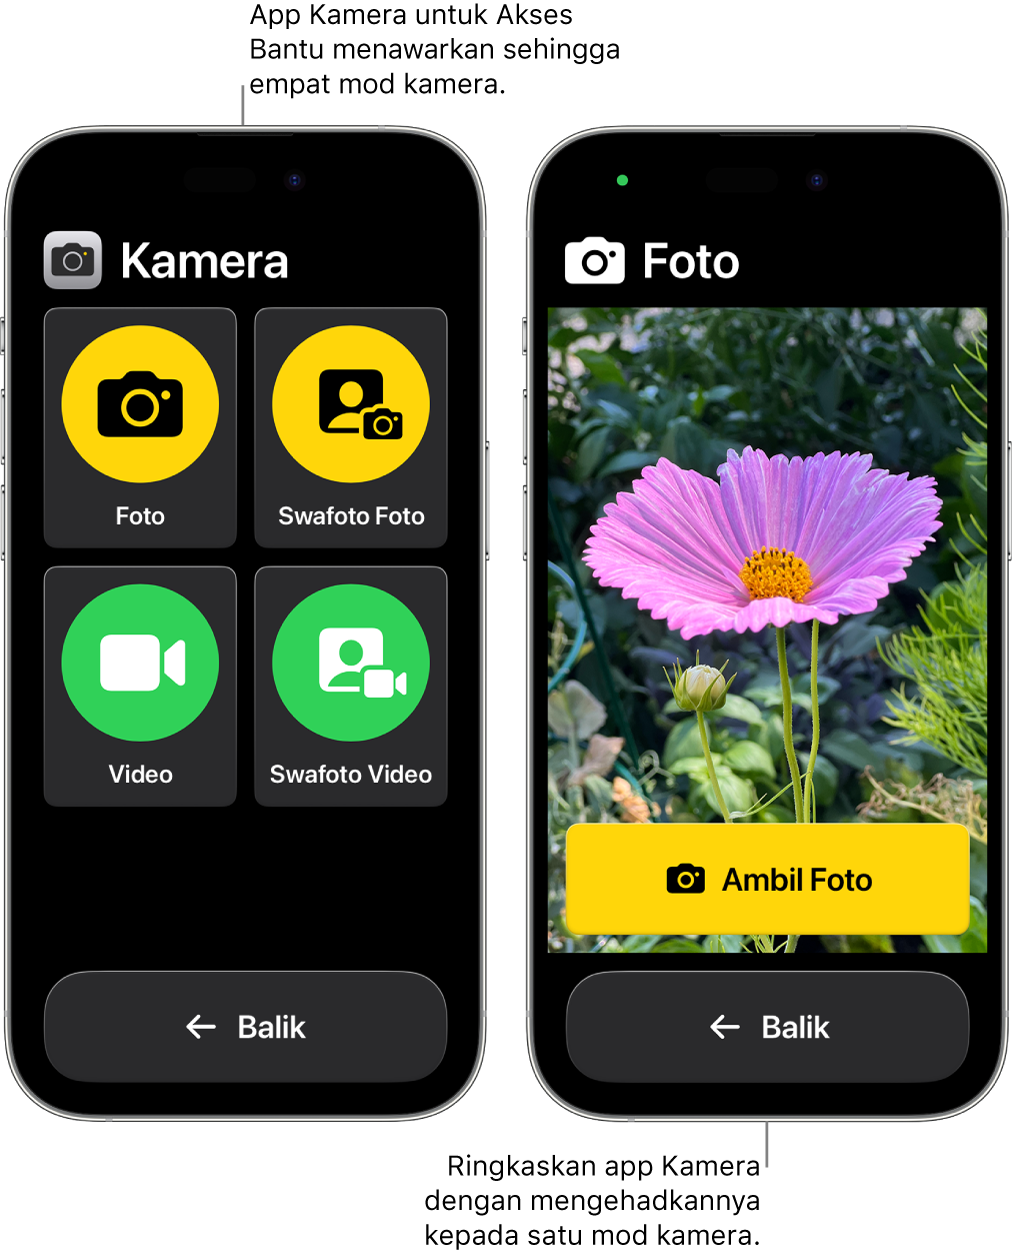 Dua iPhone dalam Akses Bantu. Satu iPhone menunjukkan app Kamera dengan mod kamera untuk dipilih oleh pengguna, seperti Video atau Swafoto Foto. Satu lagi iPhone menunjukkan app Kamera dengan mod tunggal untuk mengambil foto.